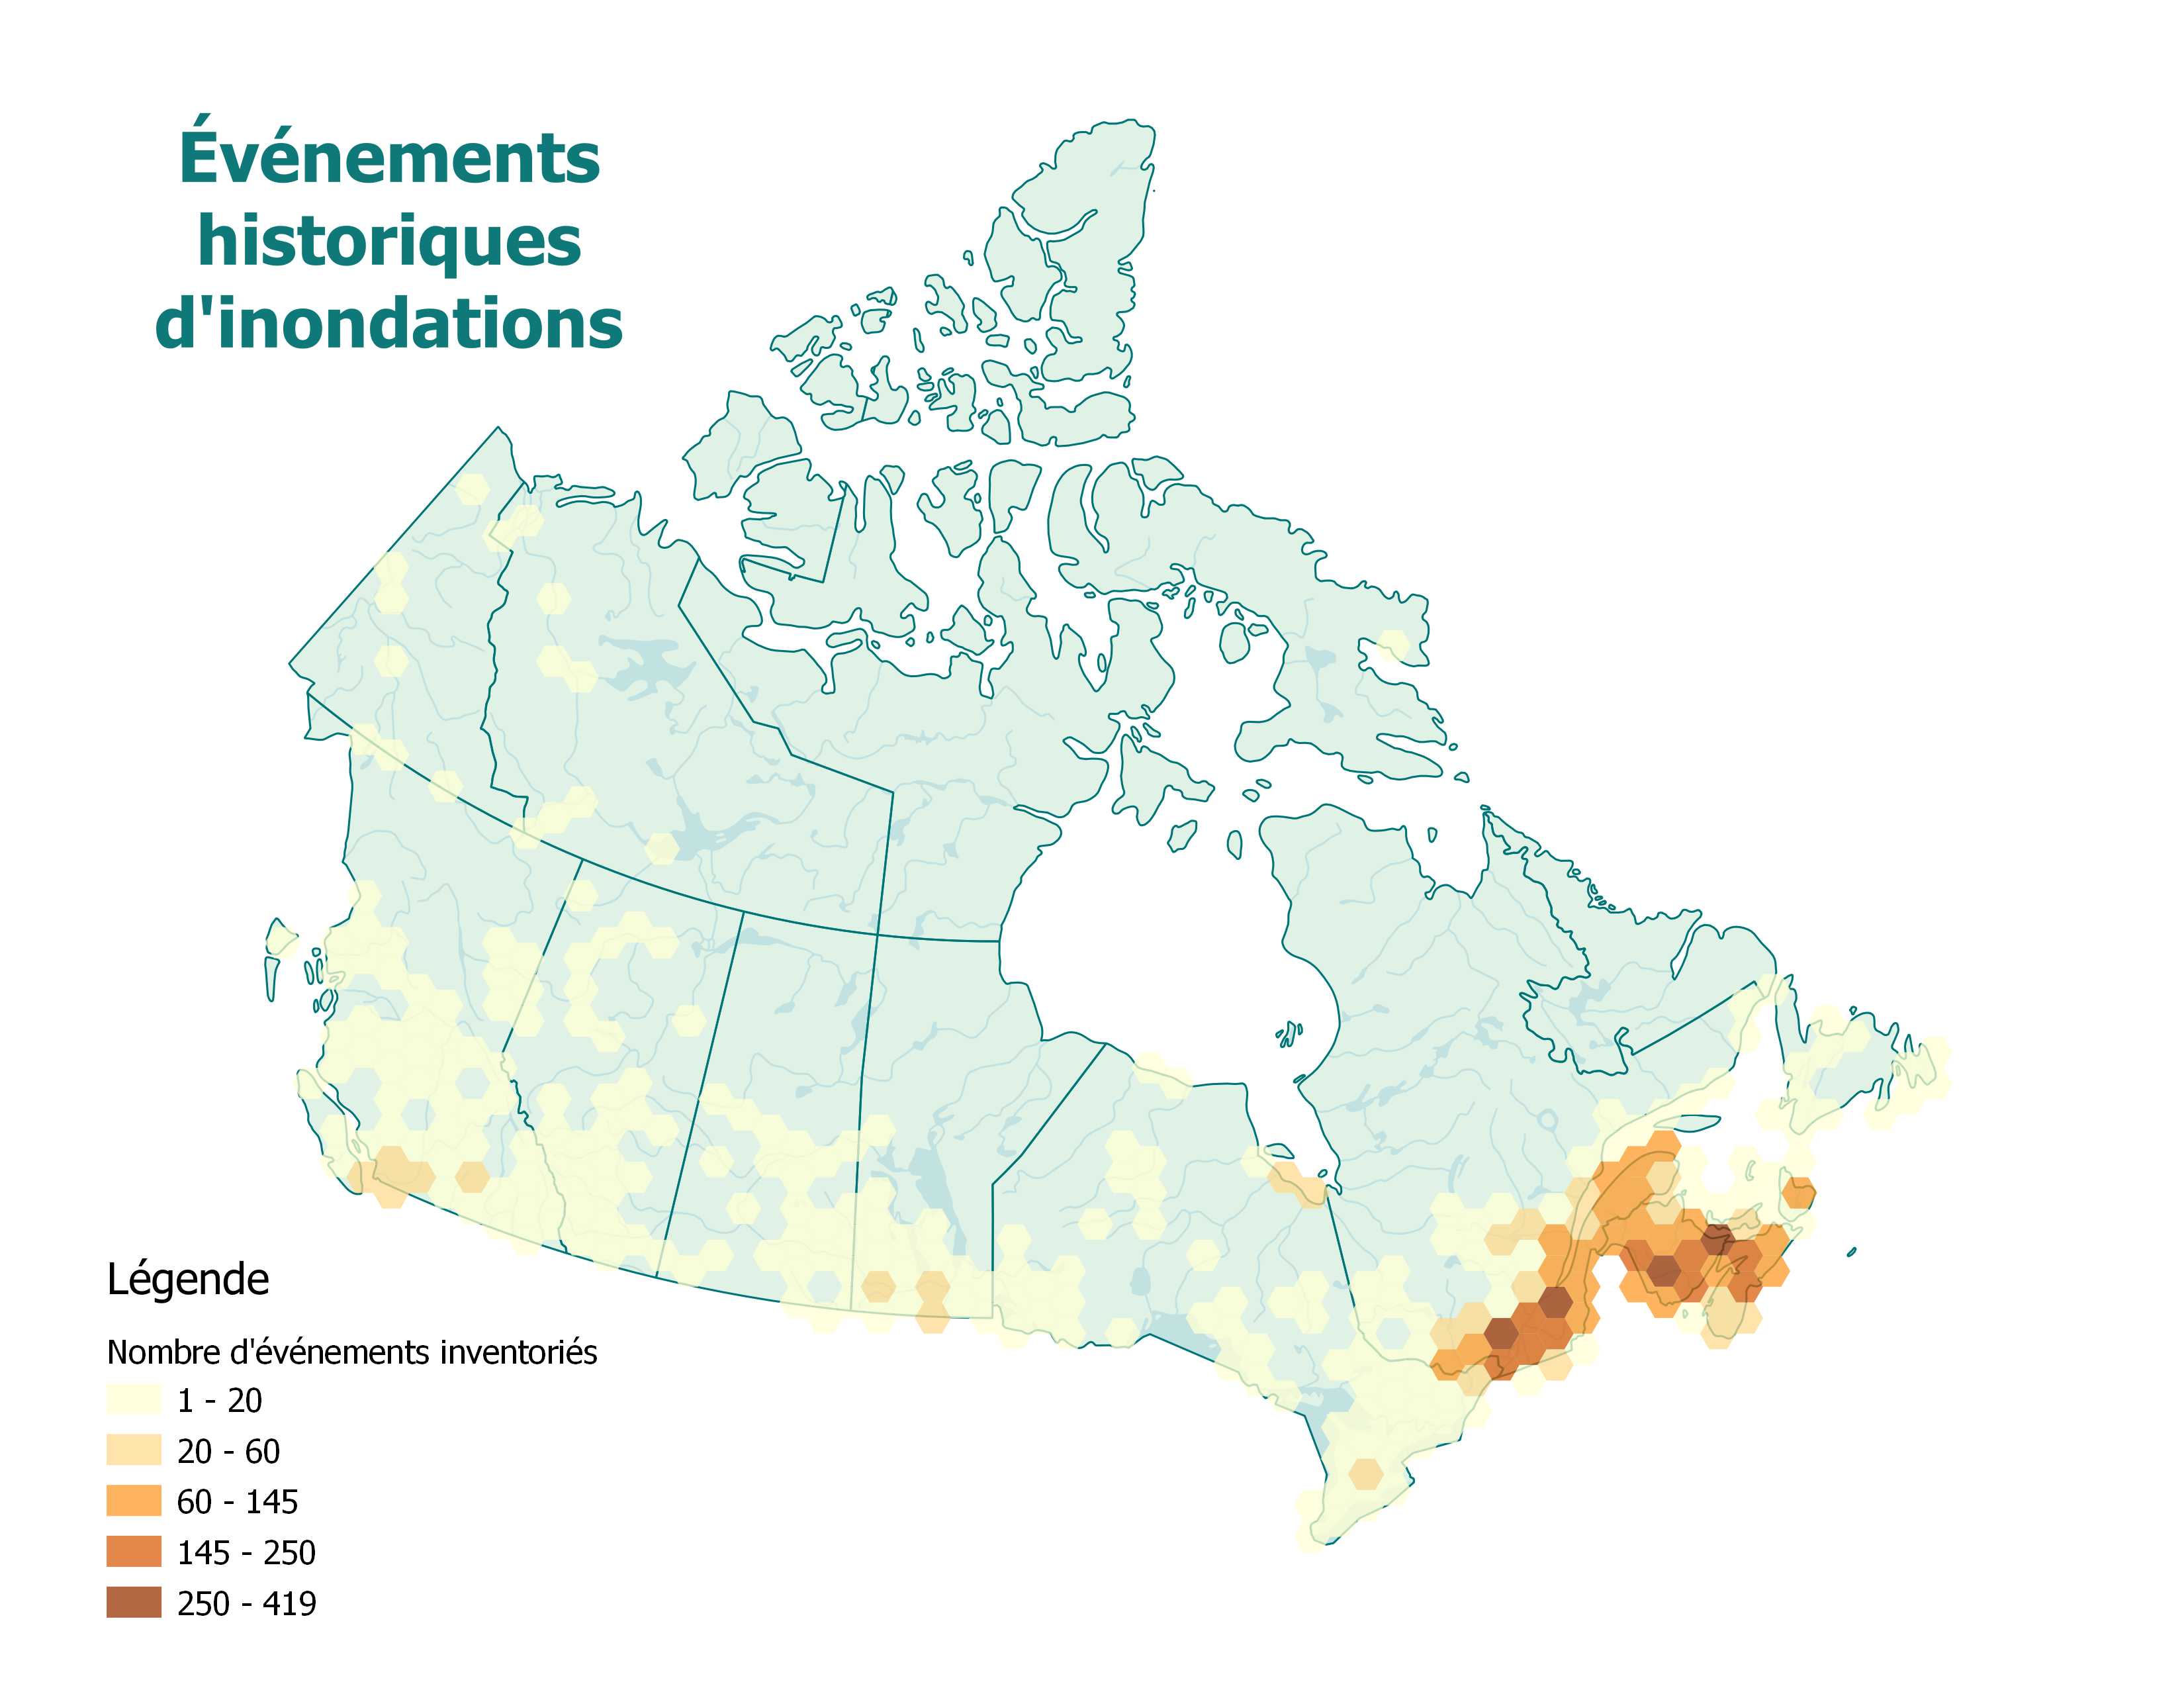 Carte du nombre d’événements historiques d’inondations inventoriés au Canada. Plus de 60 événements historiques d’inondations ont été inventoriés au Québec au sud du Saint-Laurent et dans les provinces maritimes. La couleur pâle indique les zones où il y a eu peu d’événements et la couleur devient plus foncée pour montrer l’augmentation du nombre d’événements.